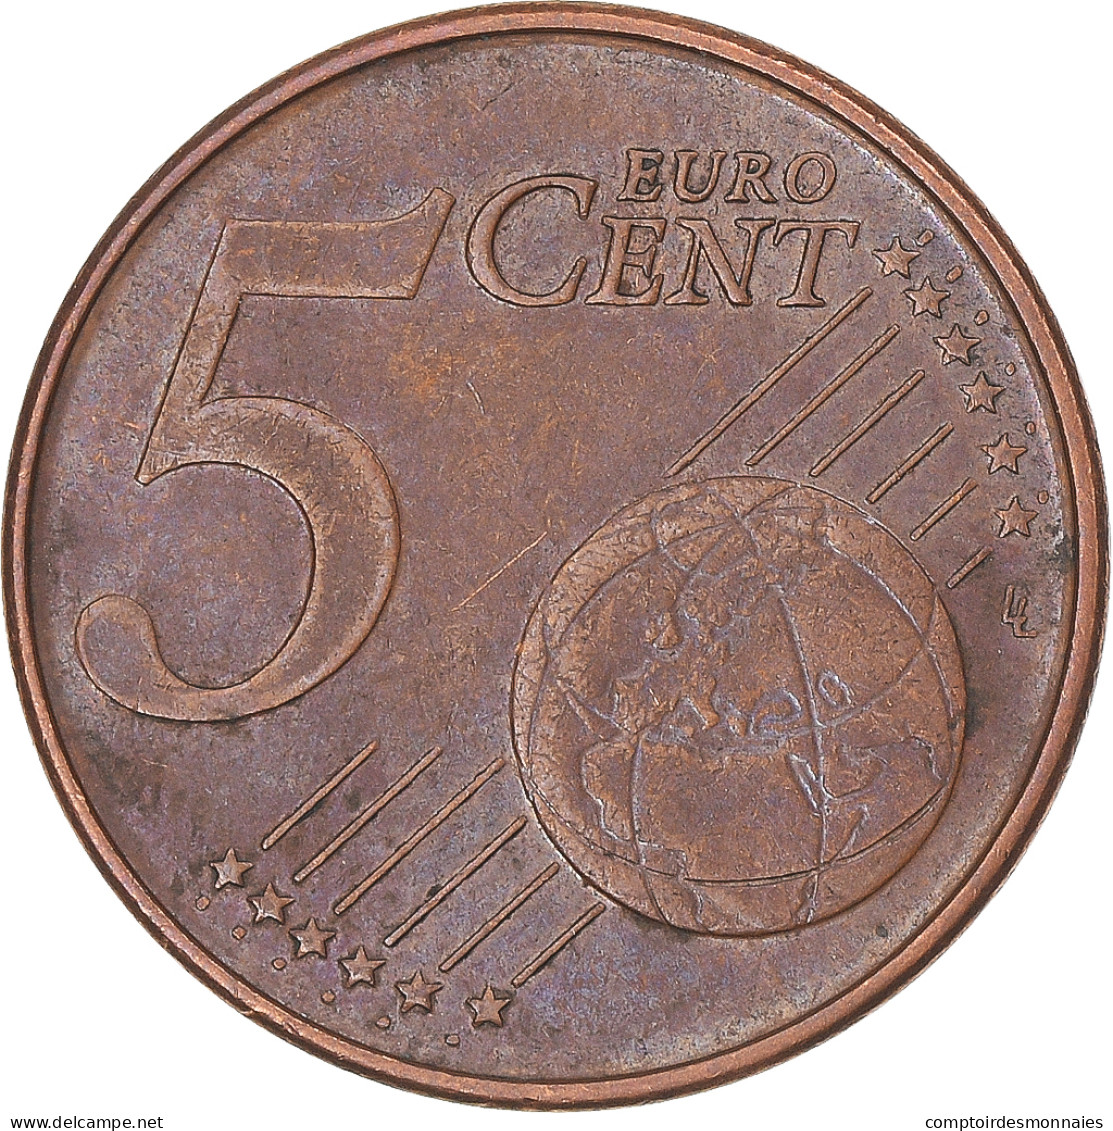 Belgique, 5 Euro Cent, 1999 - Belgio